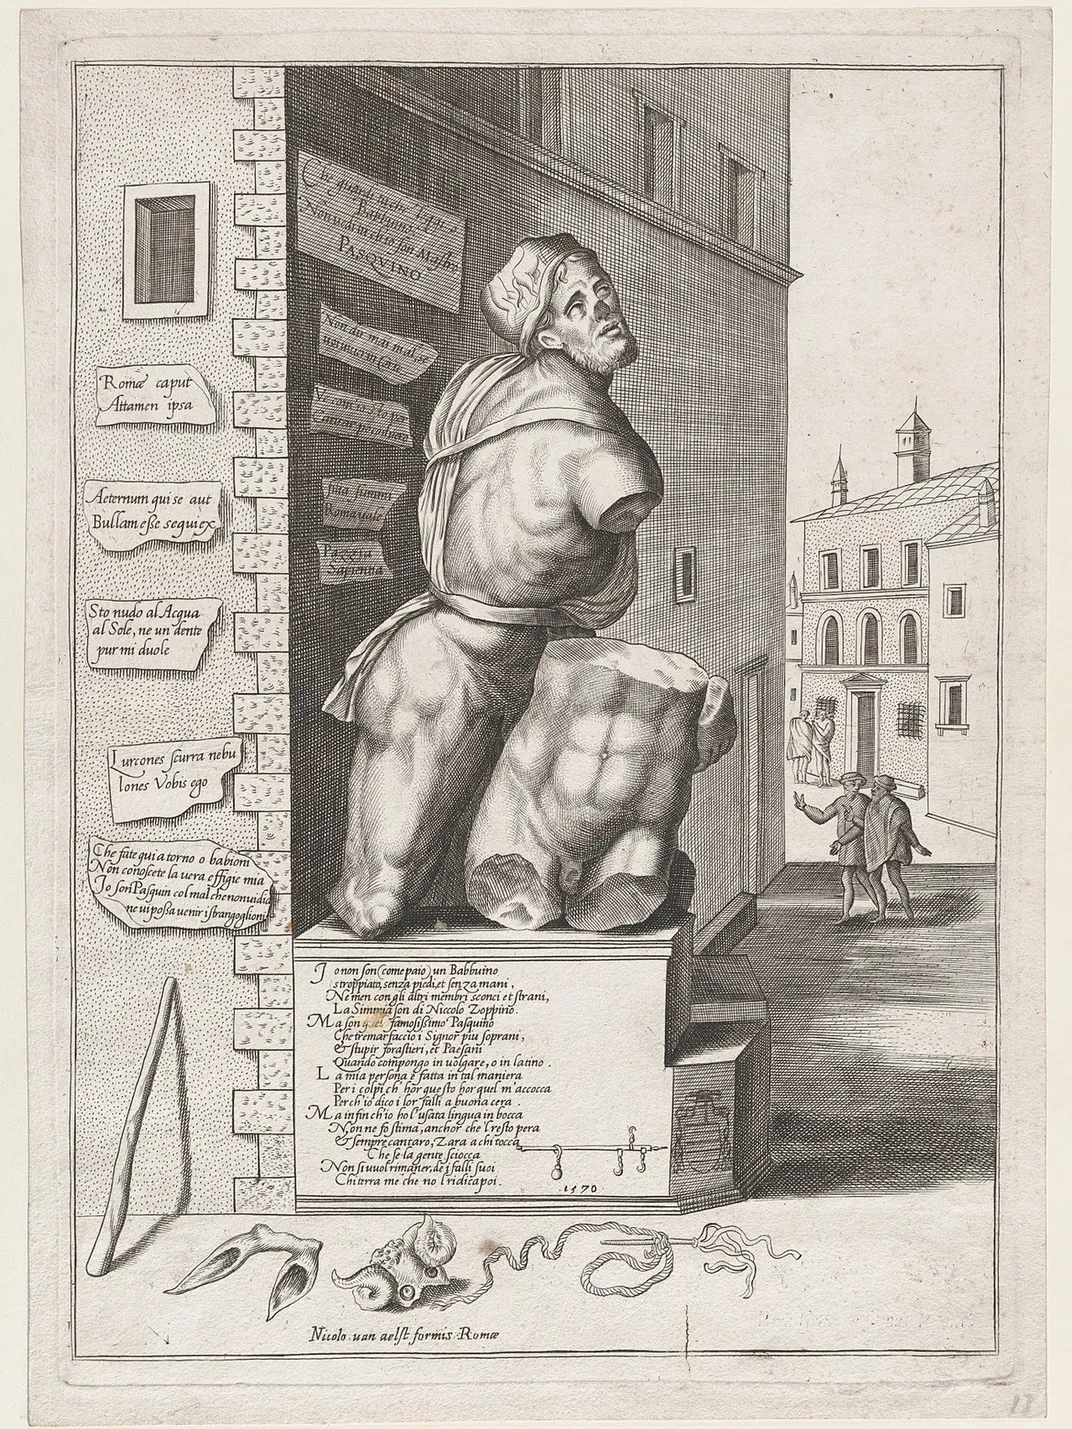 A 1550 engraving of Pasquino